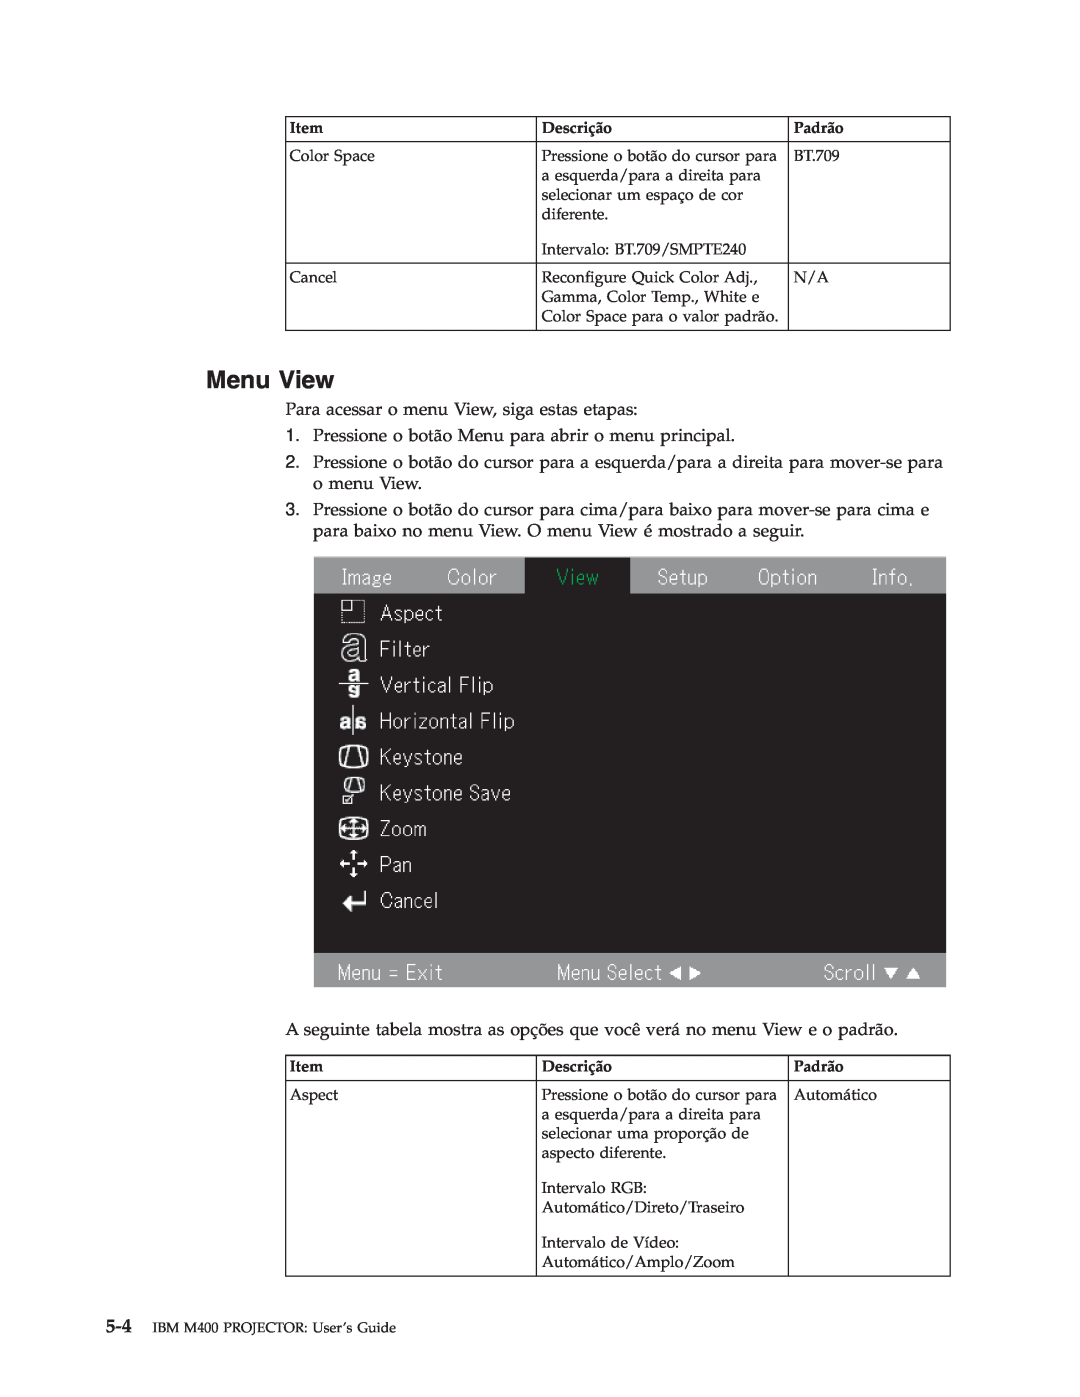 IBM manual Menu View, IBM M400 PROJECTOR User’s Guide 